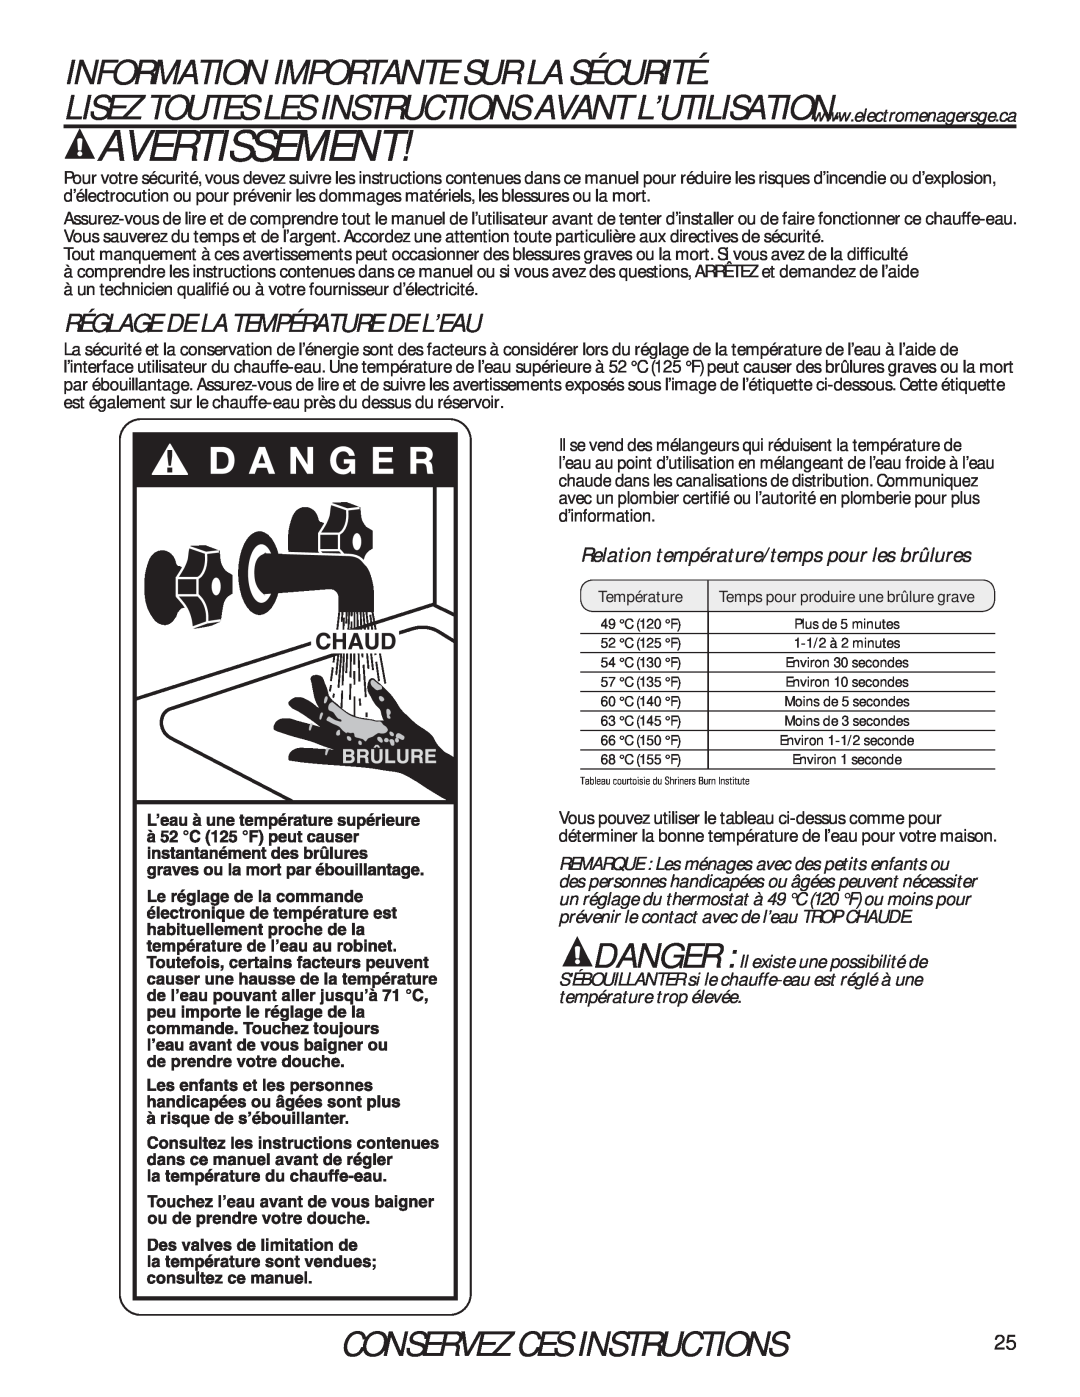 GE 49-50292 owner manual Avertissement, Information Importante Sur La Sécurité, Conservez Ces Instructions 